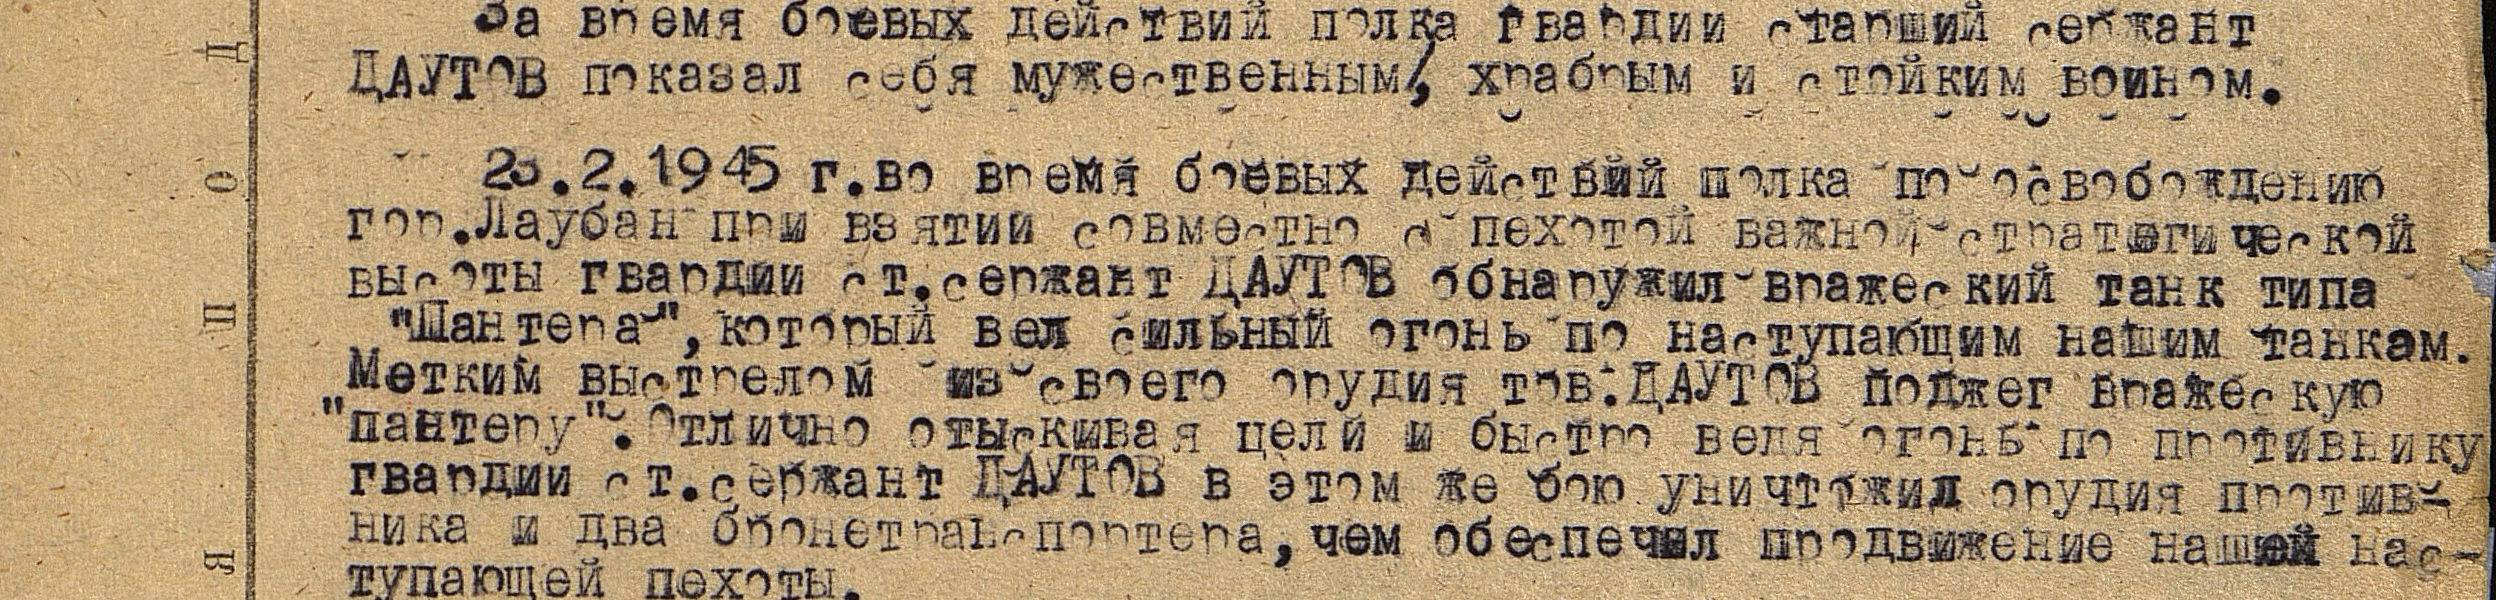 Описание подвига Даутова А.Г. от 23.02.1945